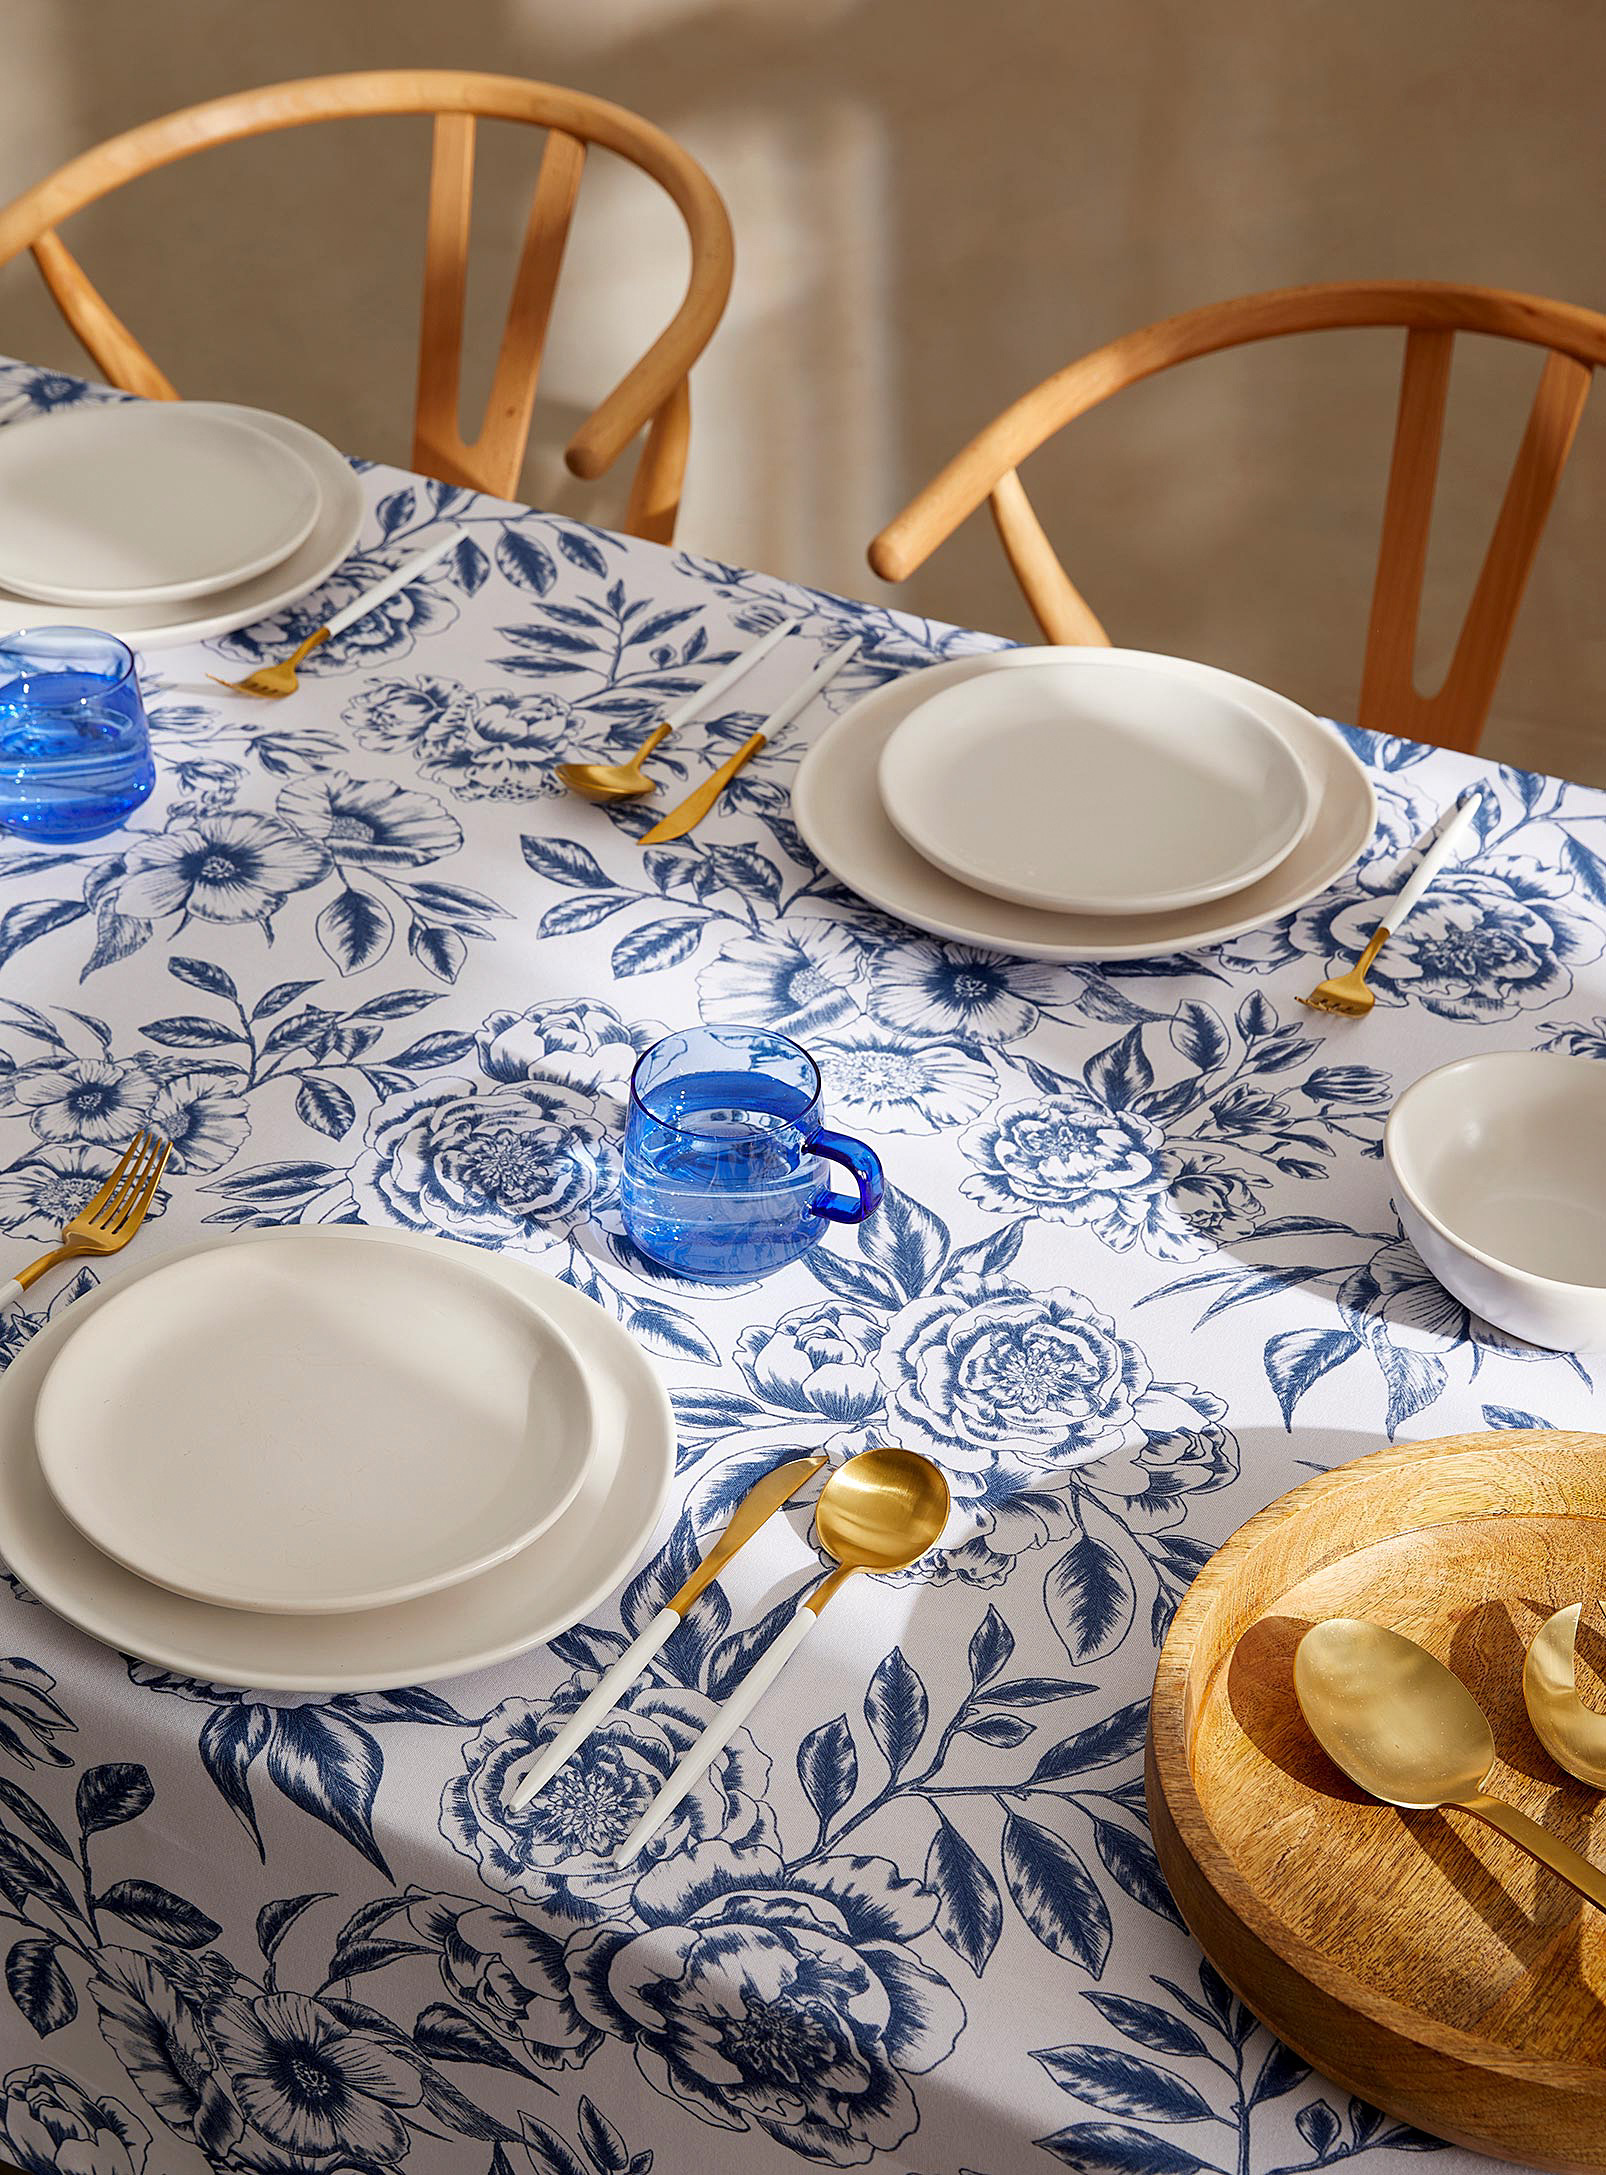 Simons Maison - Toile de Jouy tablecloth